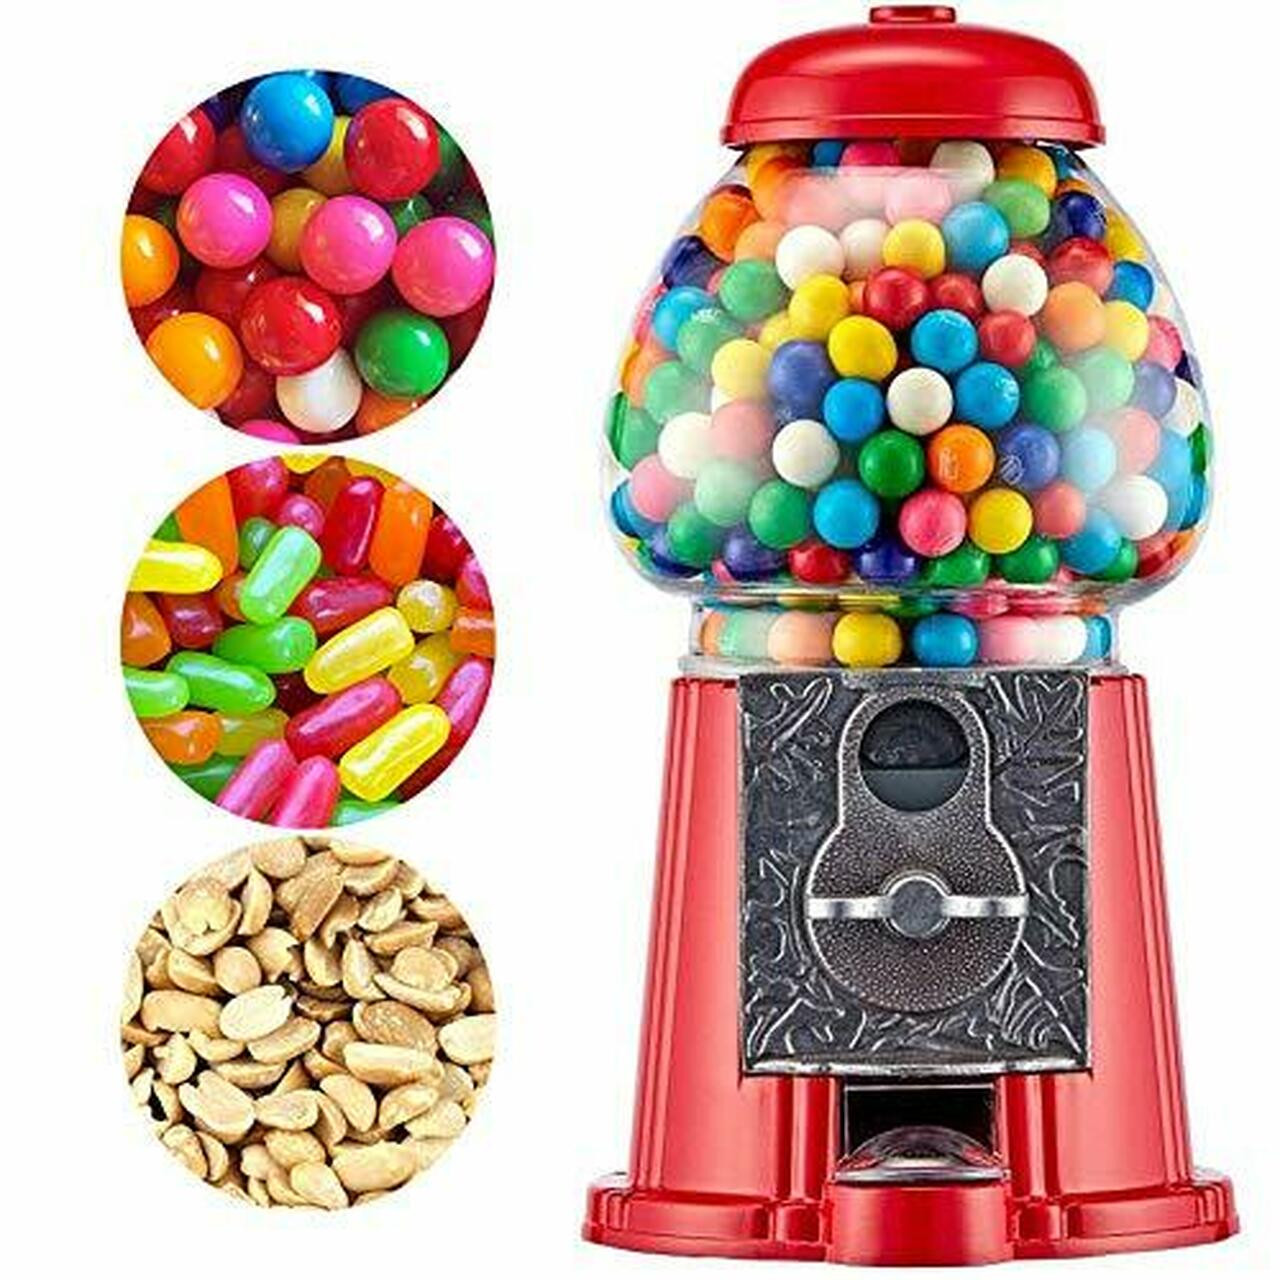 Gumball Sweet Dispenser Candy Vending Machine Free Gum Ball Bubble Jelly  Bean